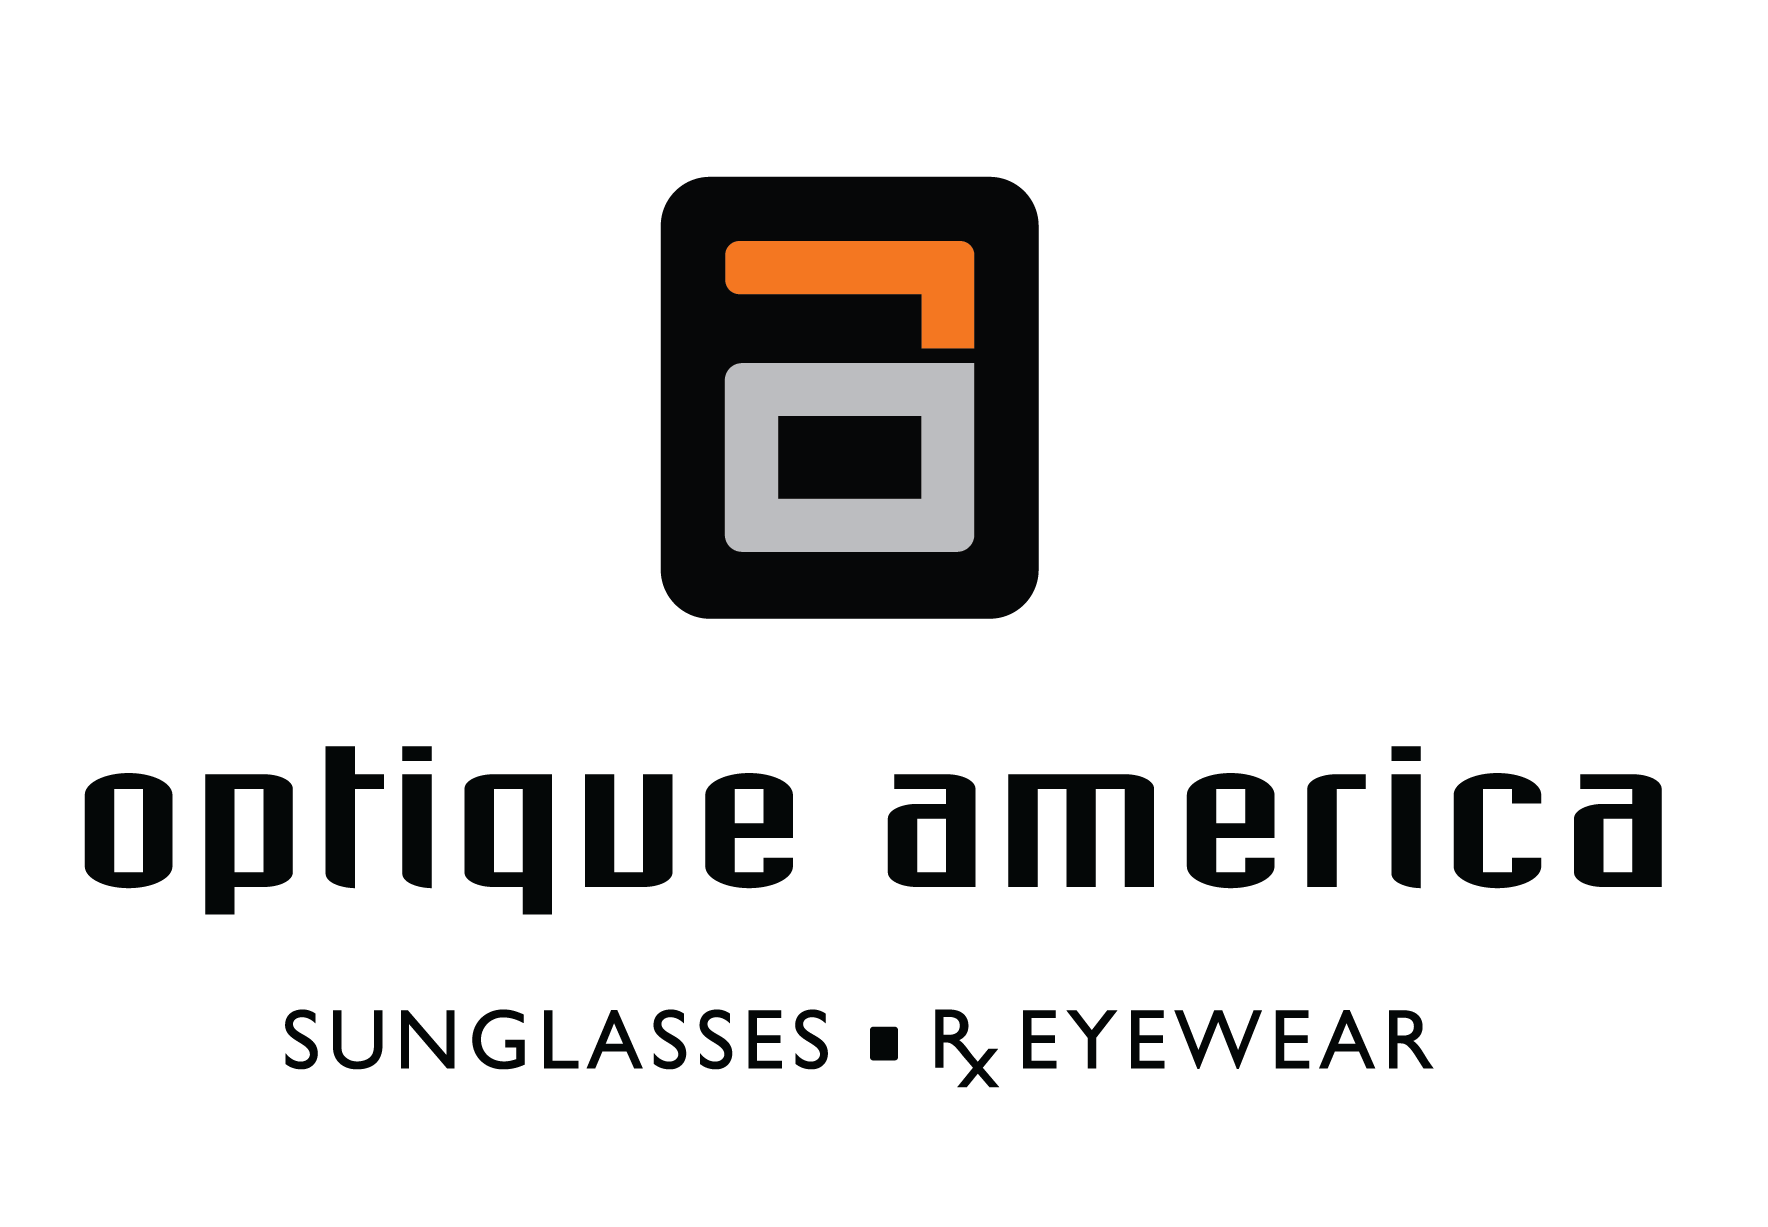 Optique America